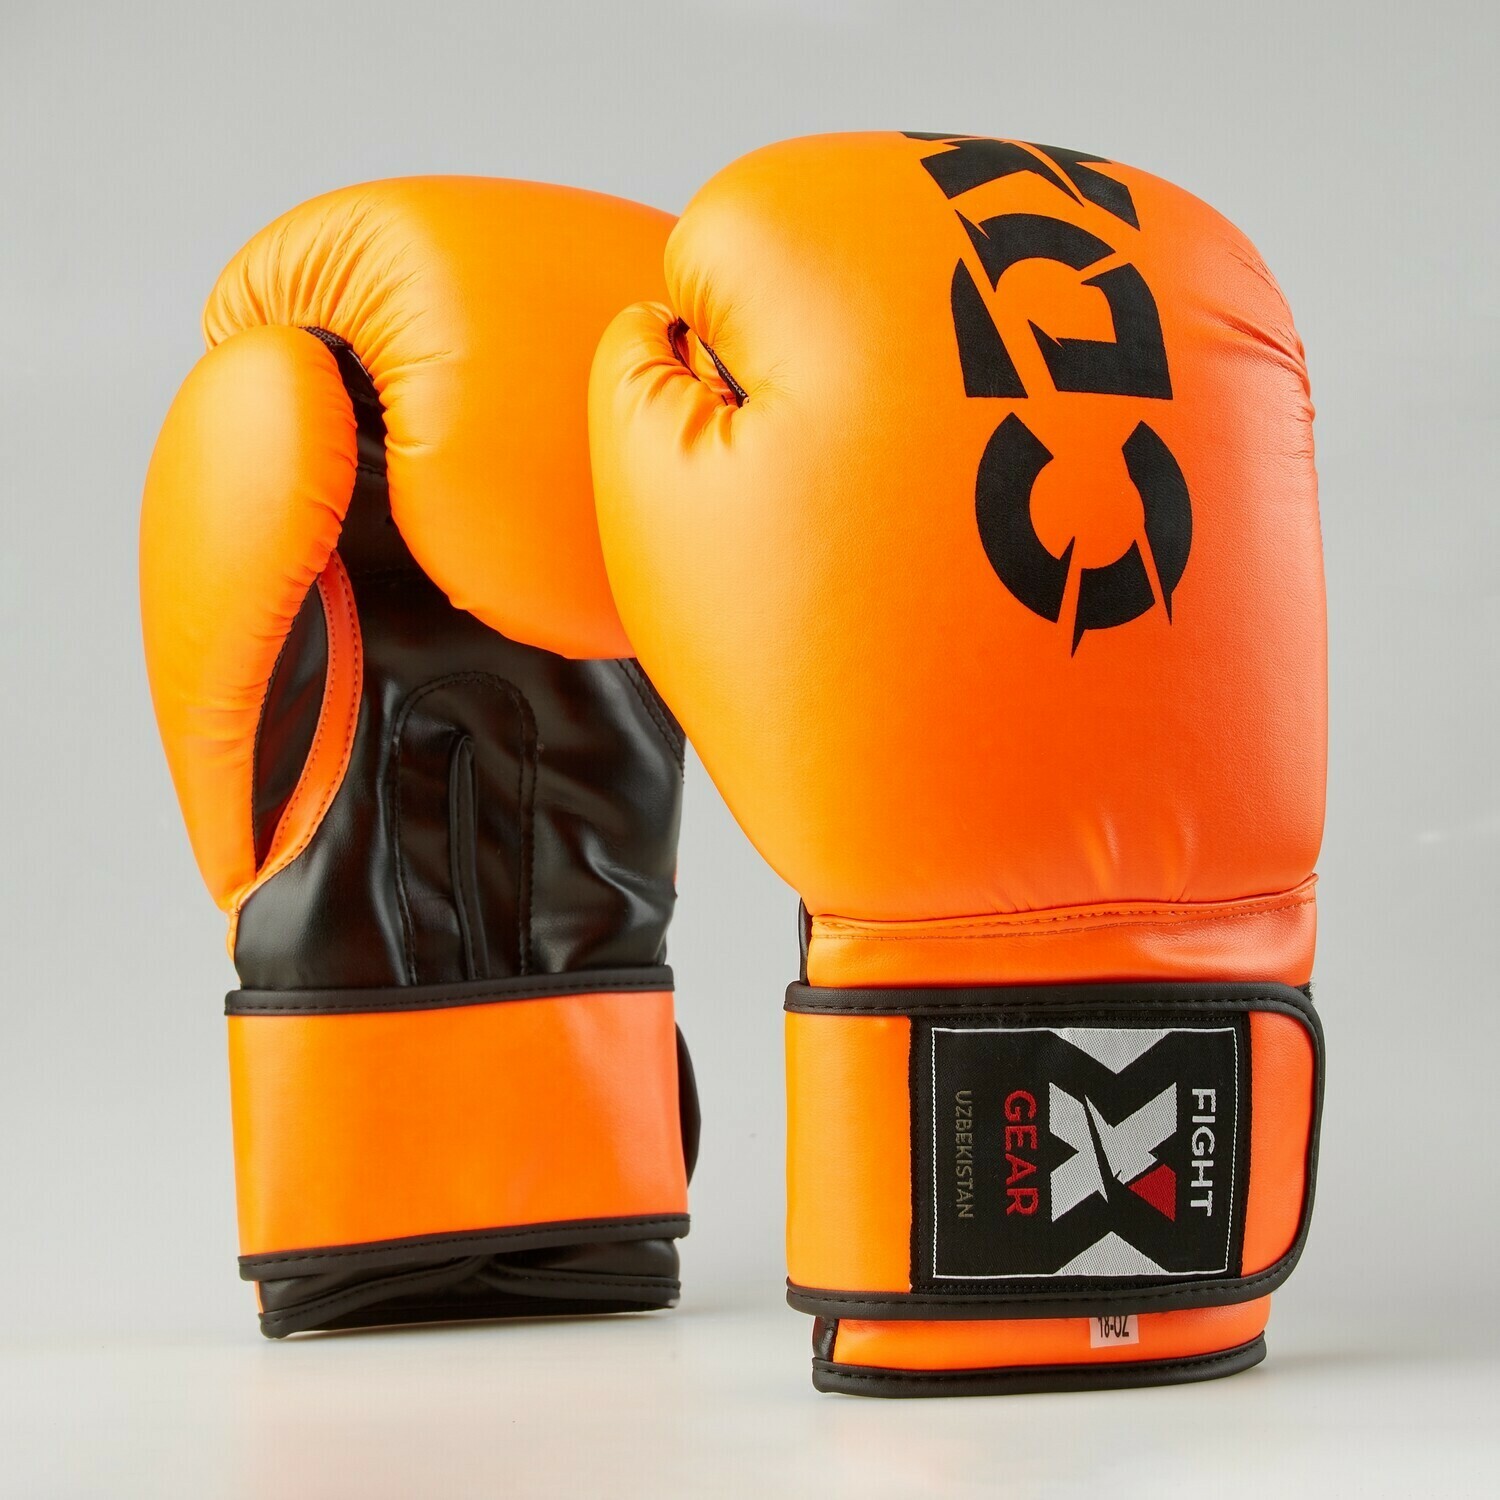 Боксерские перчатки из искусственной кожи "Rexin" оранжево-черные